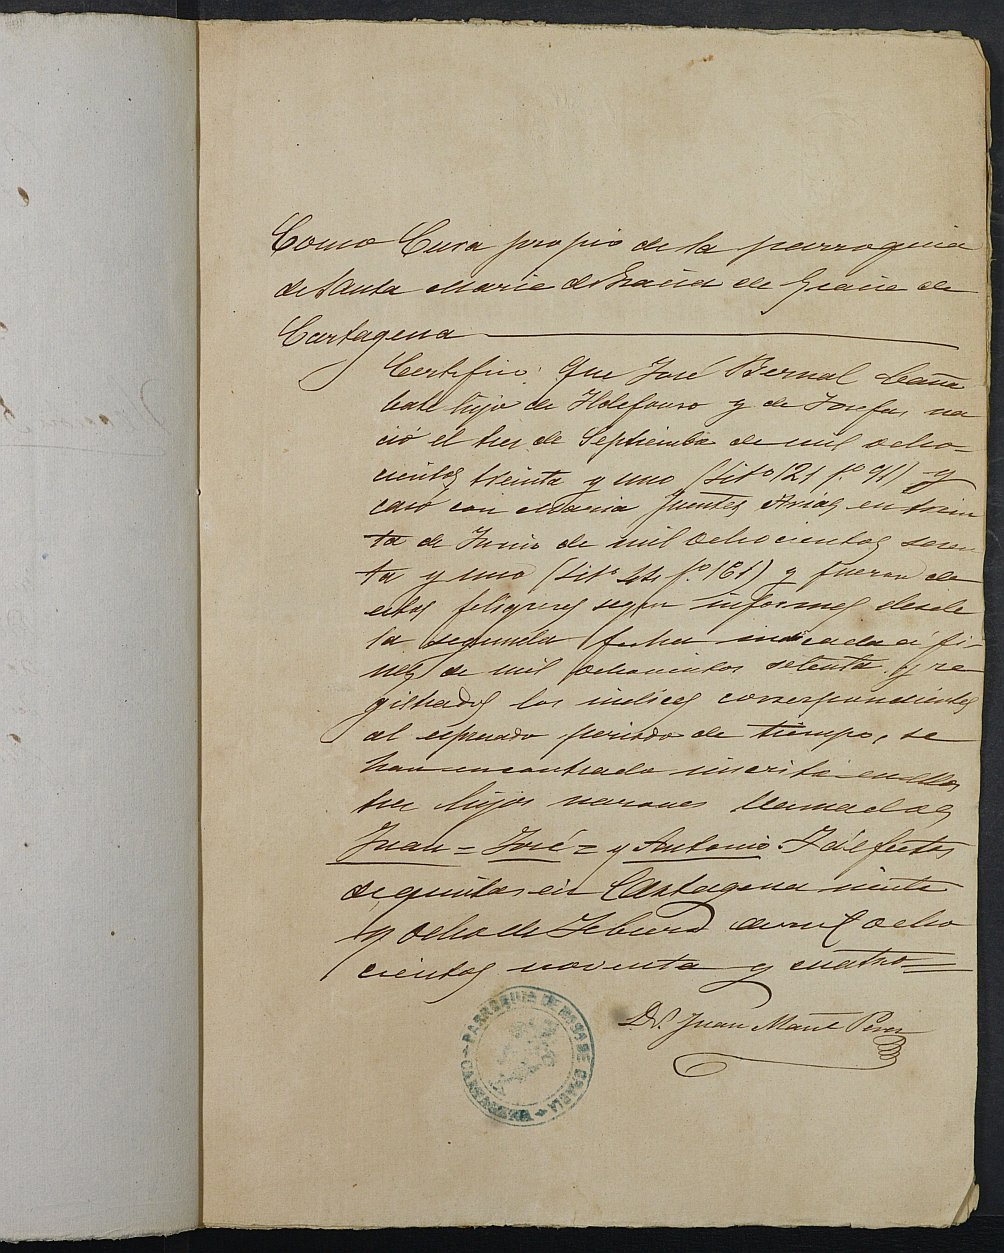 Expediente justificativo de la excepción del servicio militar de Francisco Bernal Fuentes, mozo del reemplazo de 1892 de Cartagena.